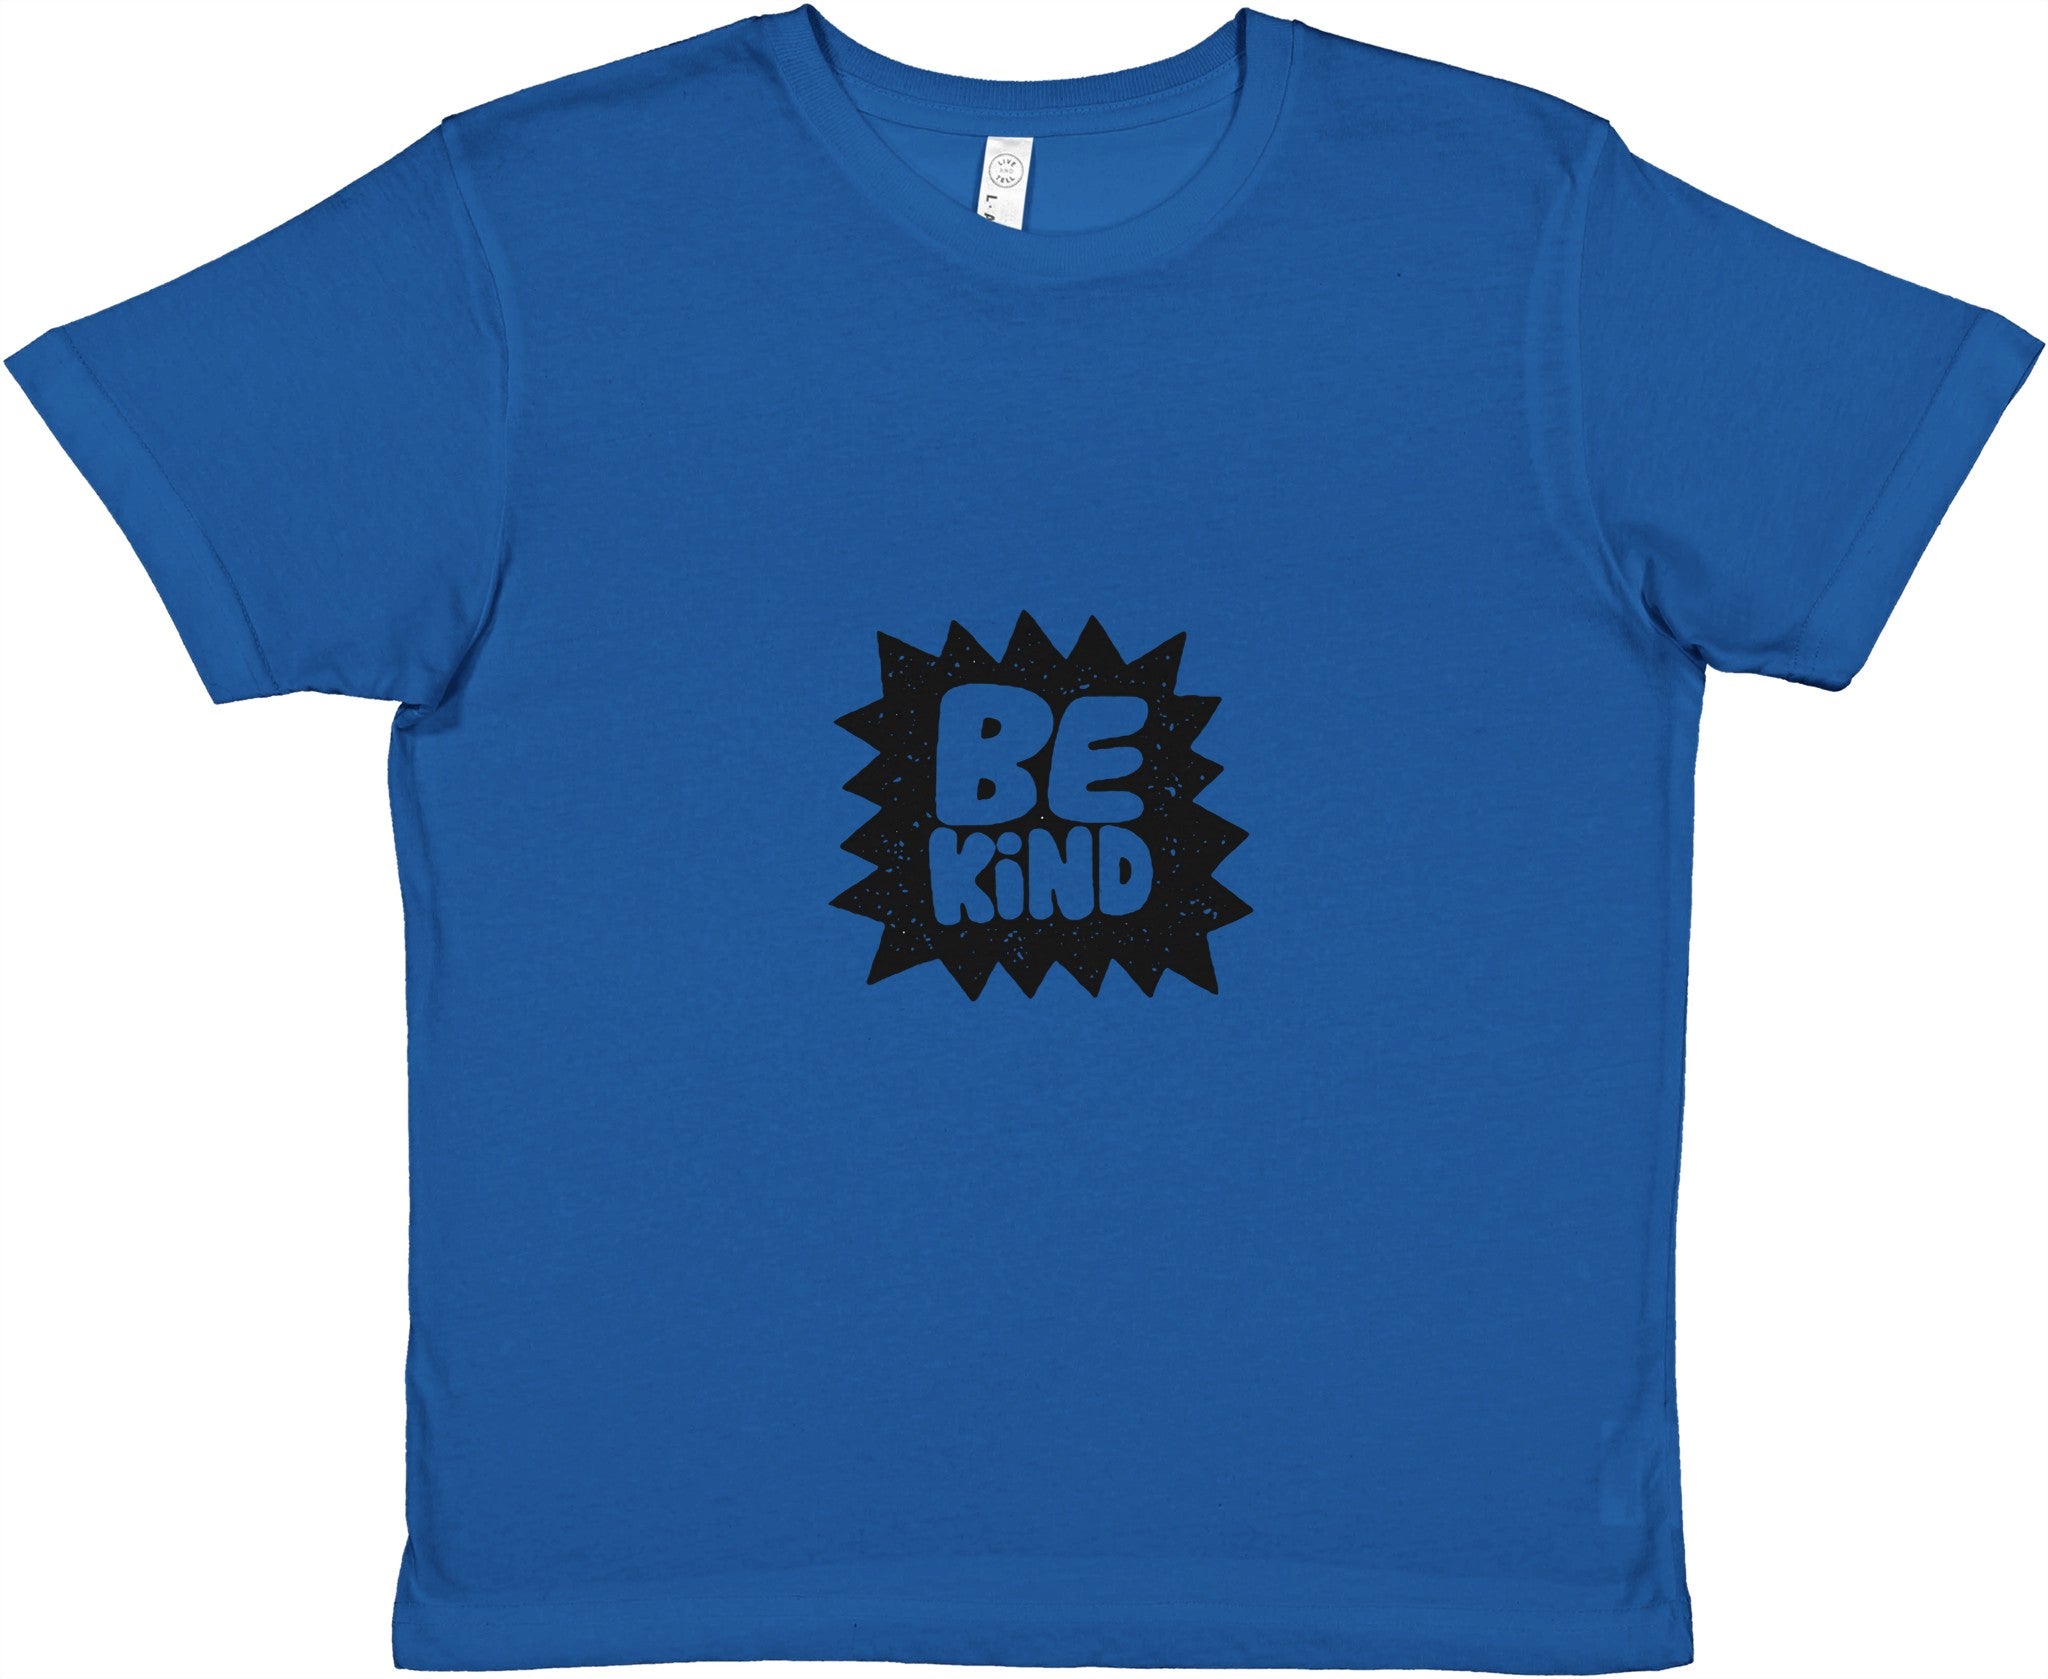 BE KIND Kids Crewneck T-shirt - Optimalprint